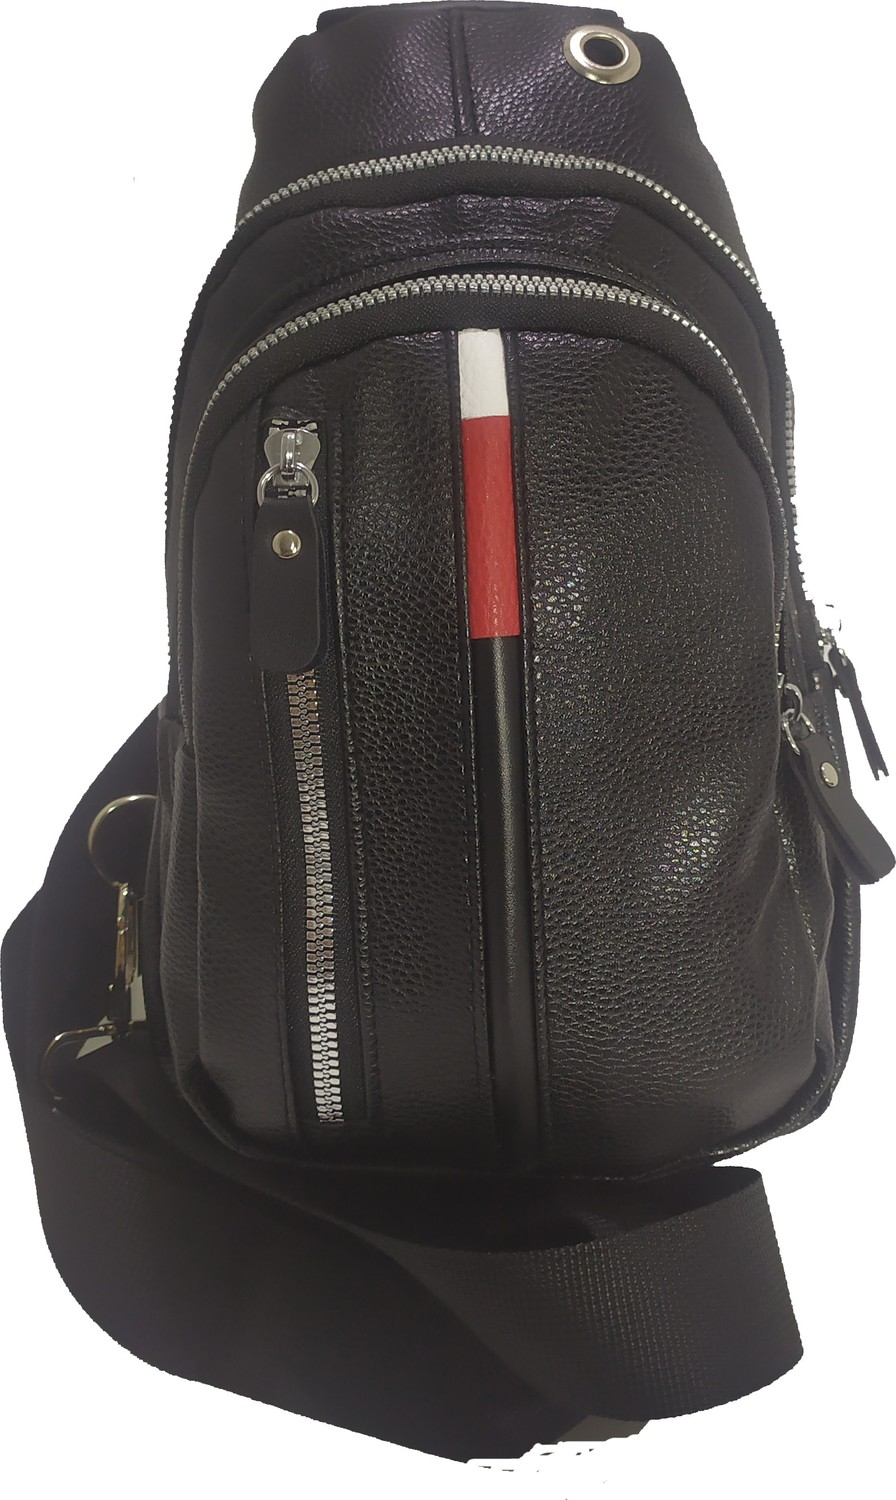 Новая сумка-рюкзак Polo Body Bag Crossbody.